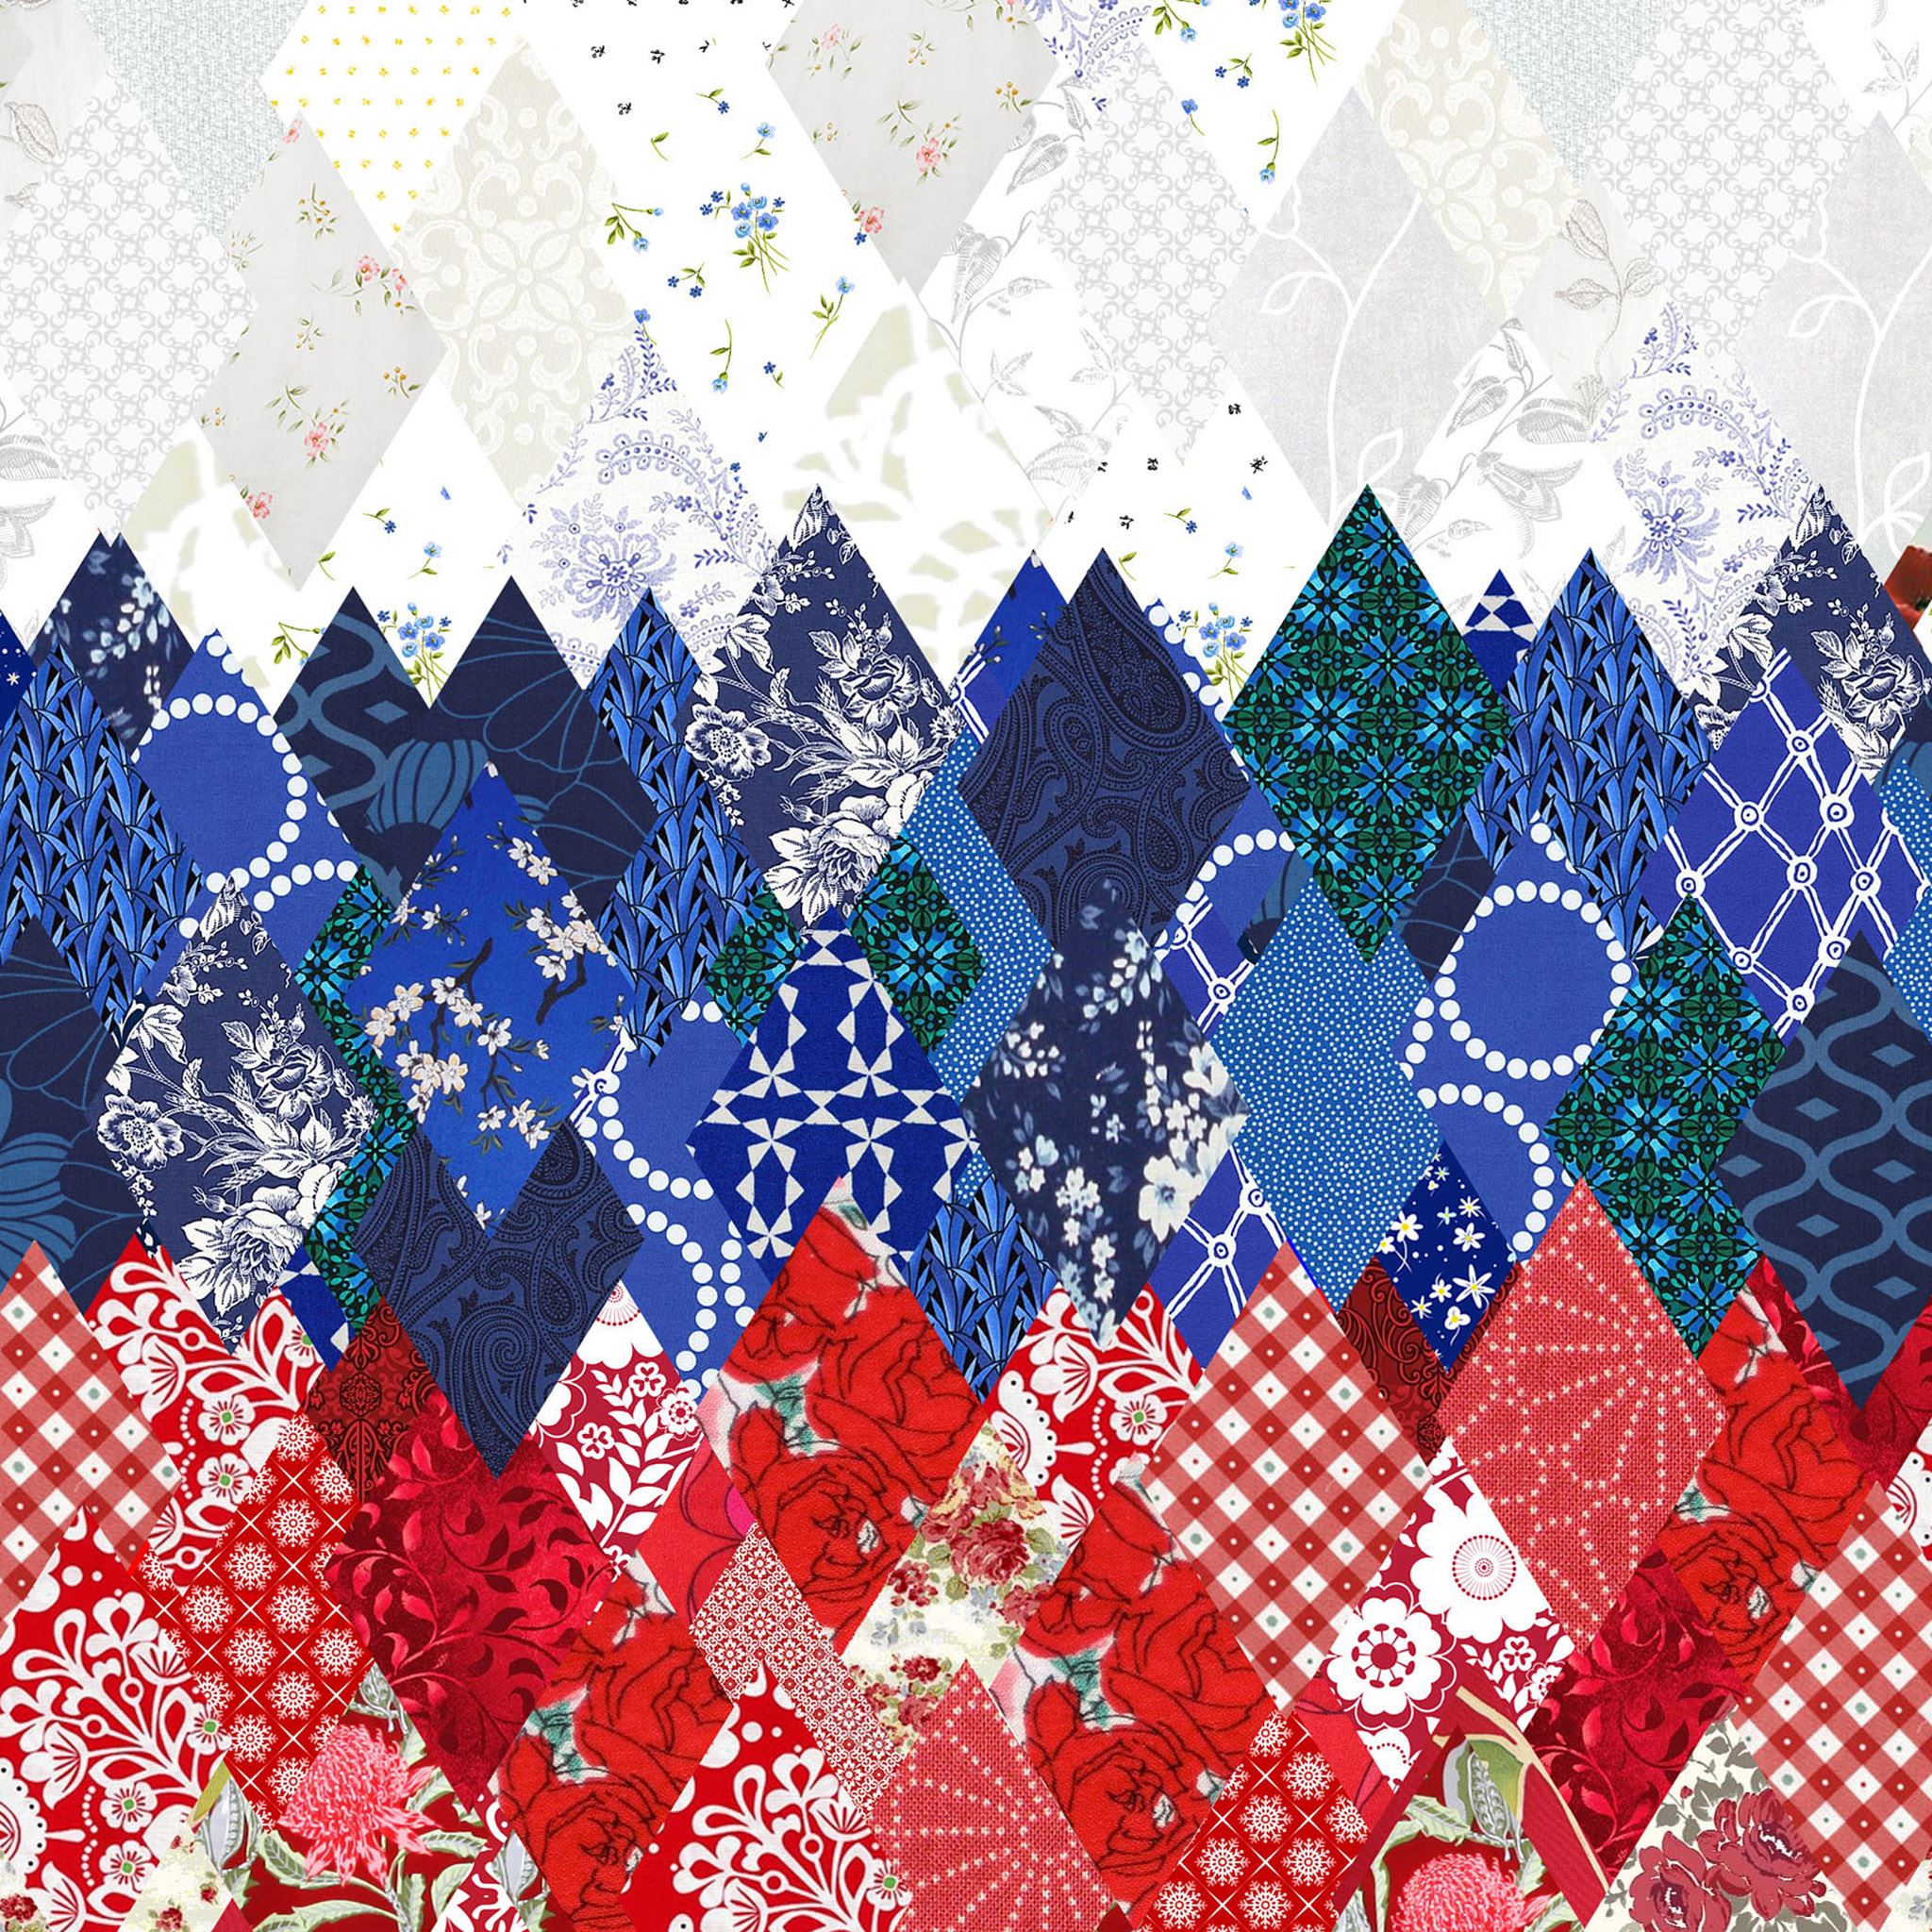 Sochi 2014 Olympics Russian Pattern iPad Air wallpaper 